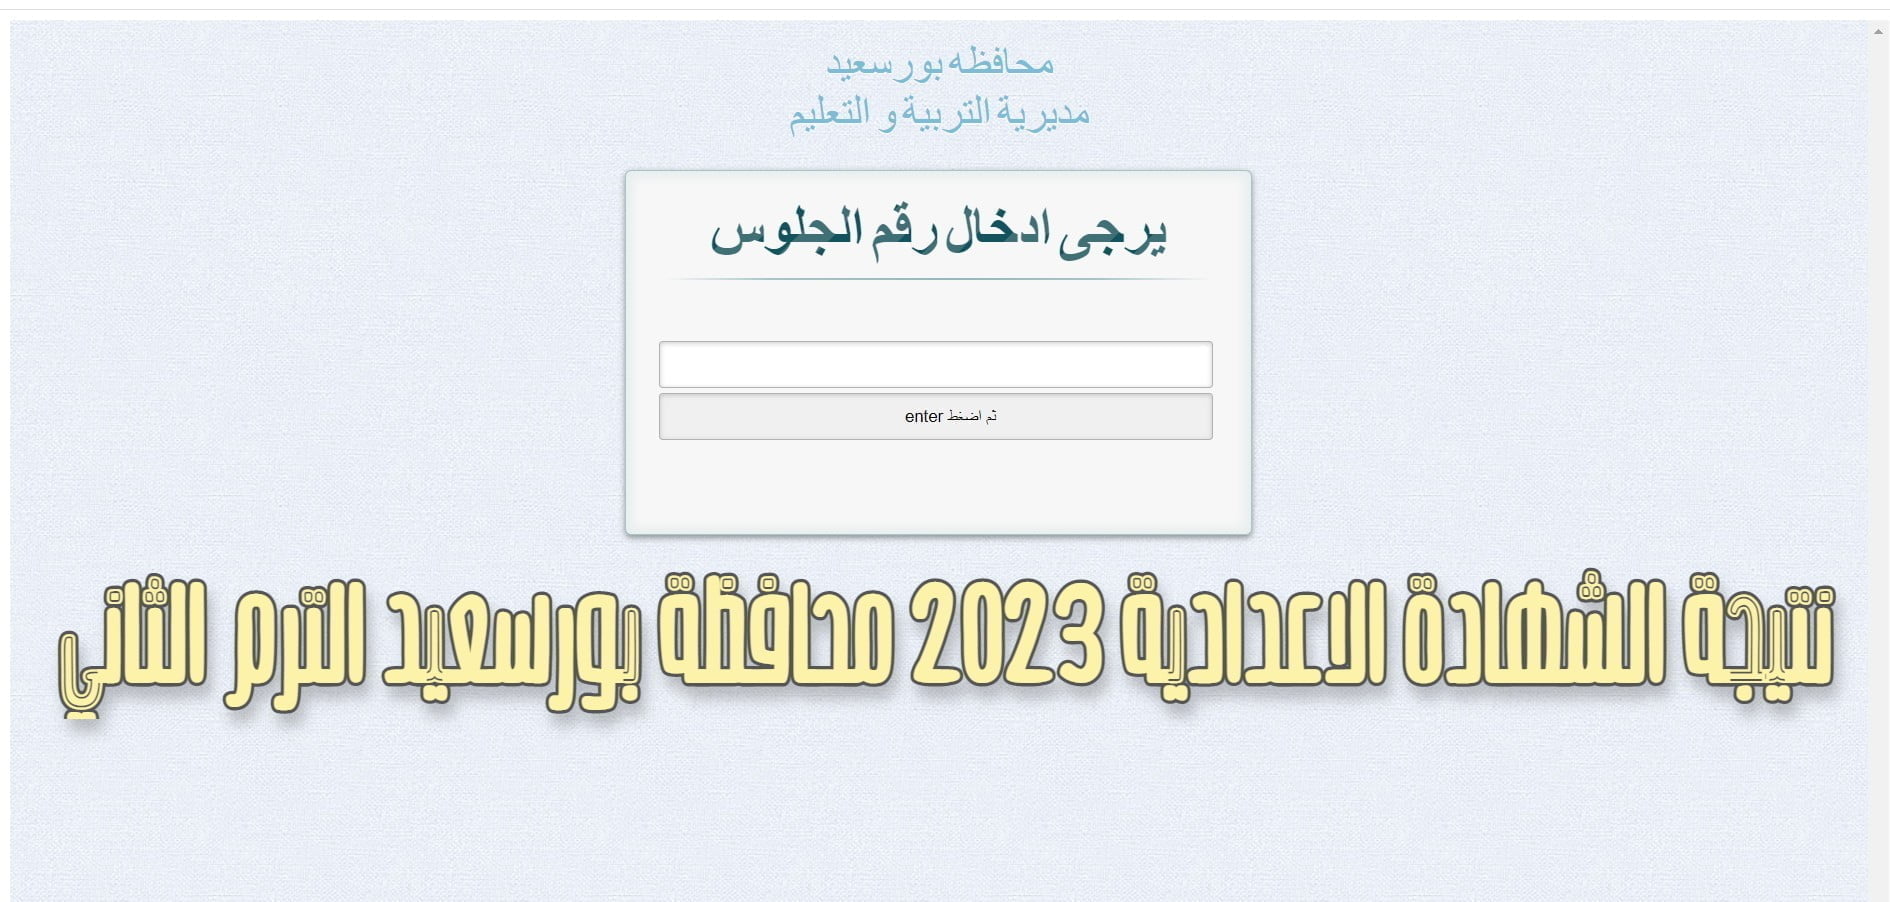 نتيجة الشهادة الاعدادية 2023 محافظة بورسعيد الترم الثاني